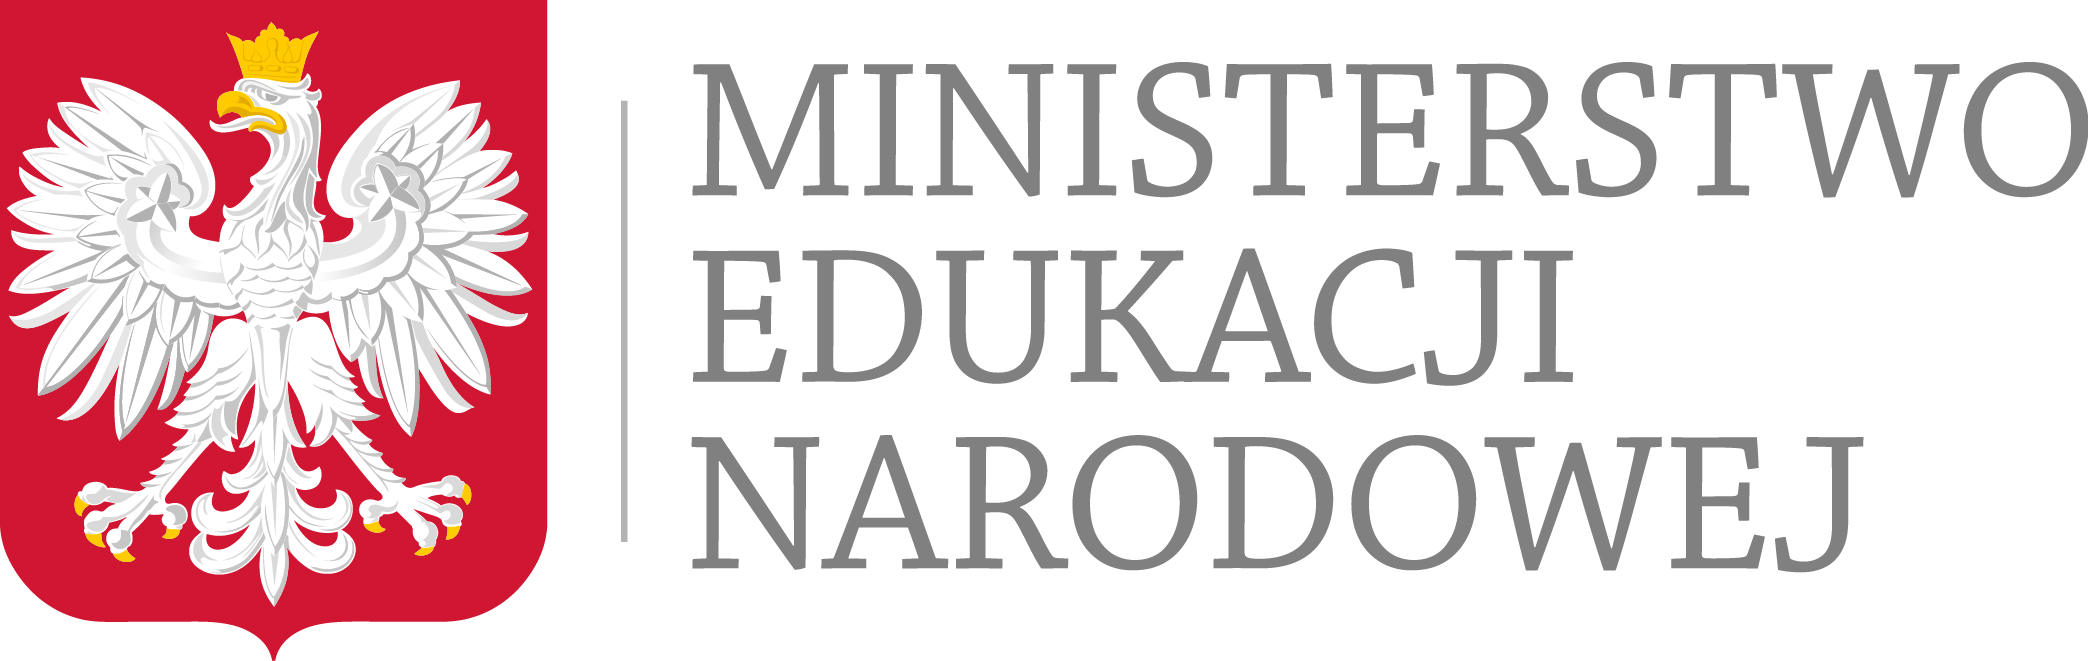 Ministerstwo Edukacji Nardowej 